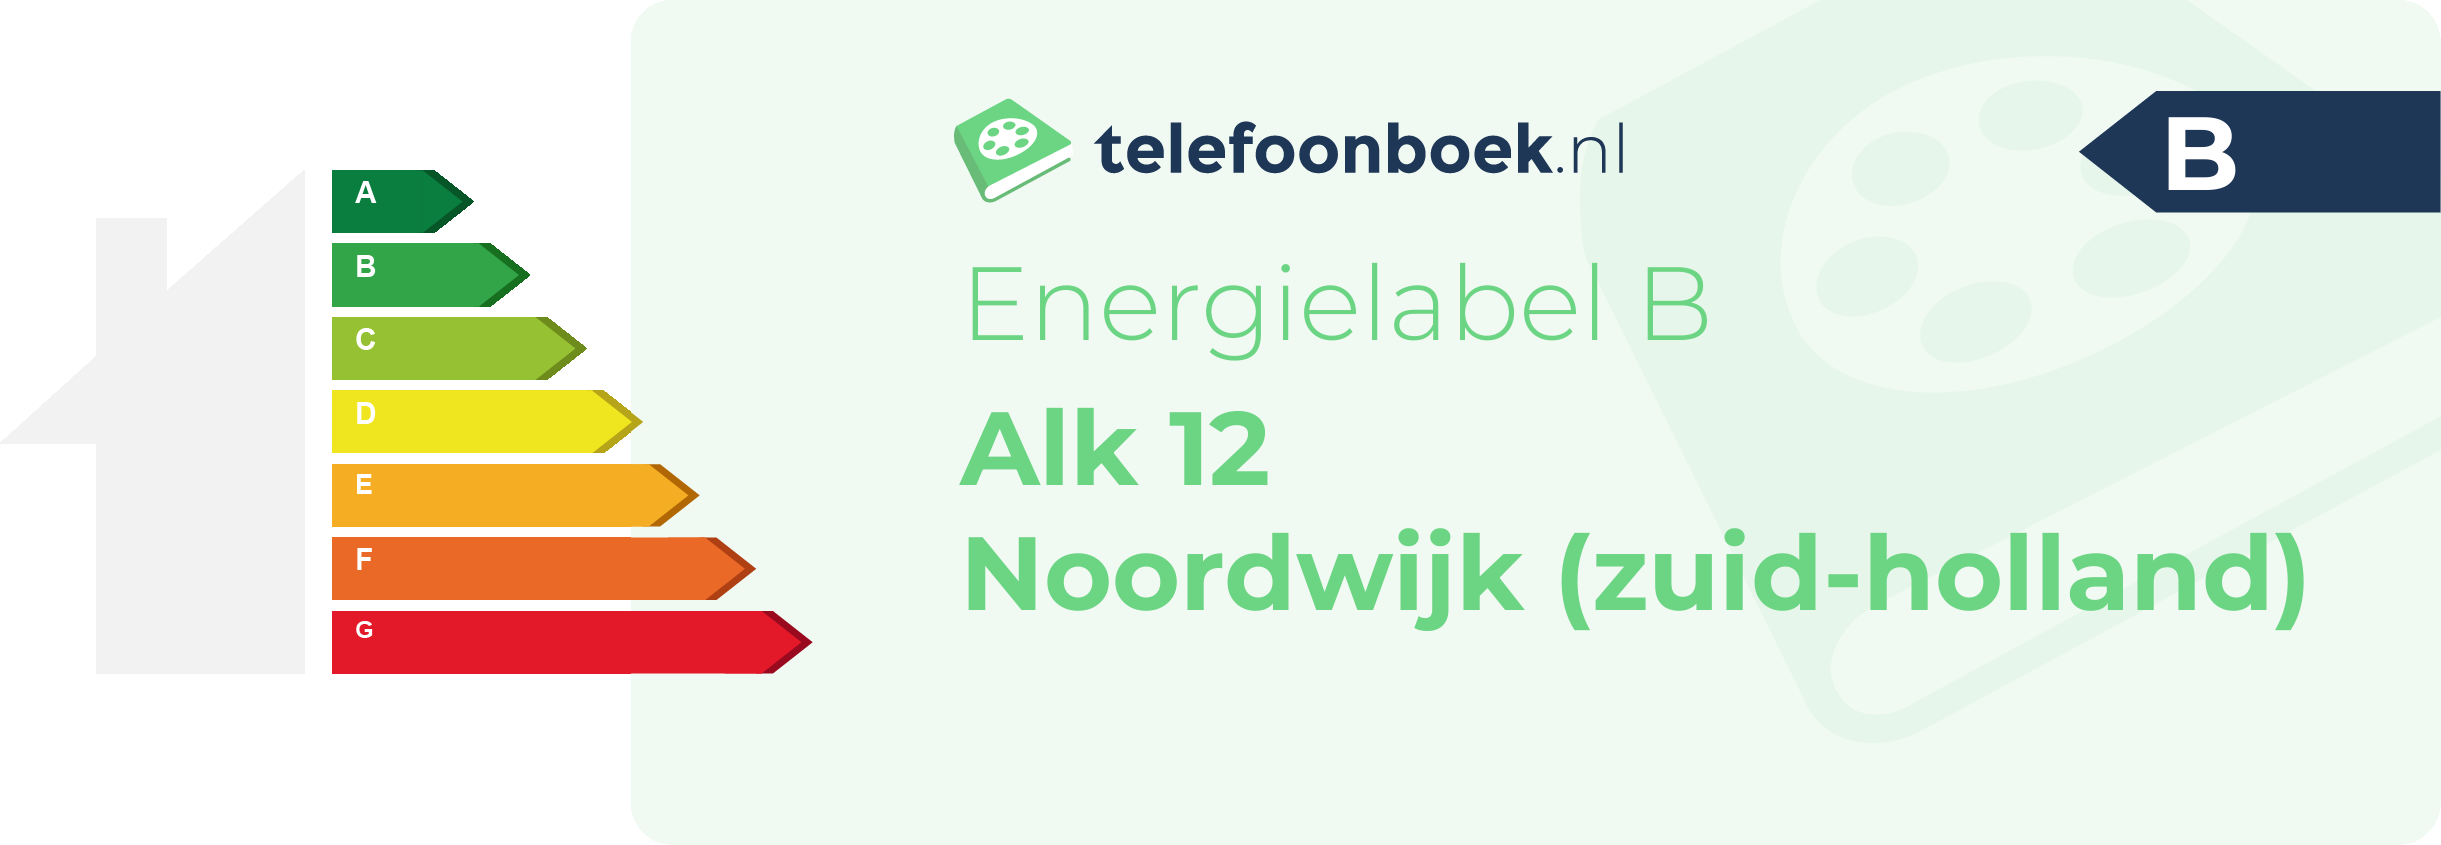 Energielabel Alk 12 Noordwijk (Zuid-Holland)